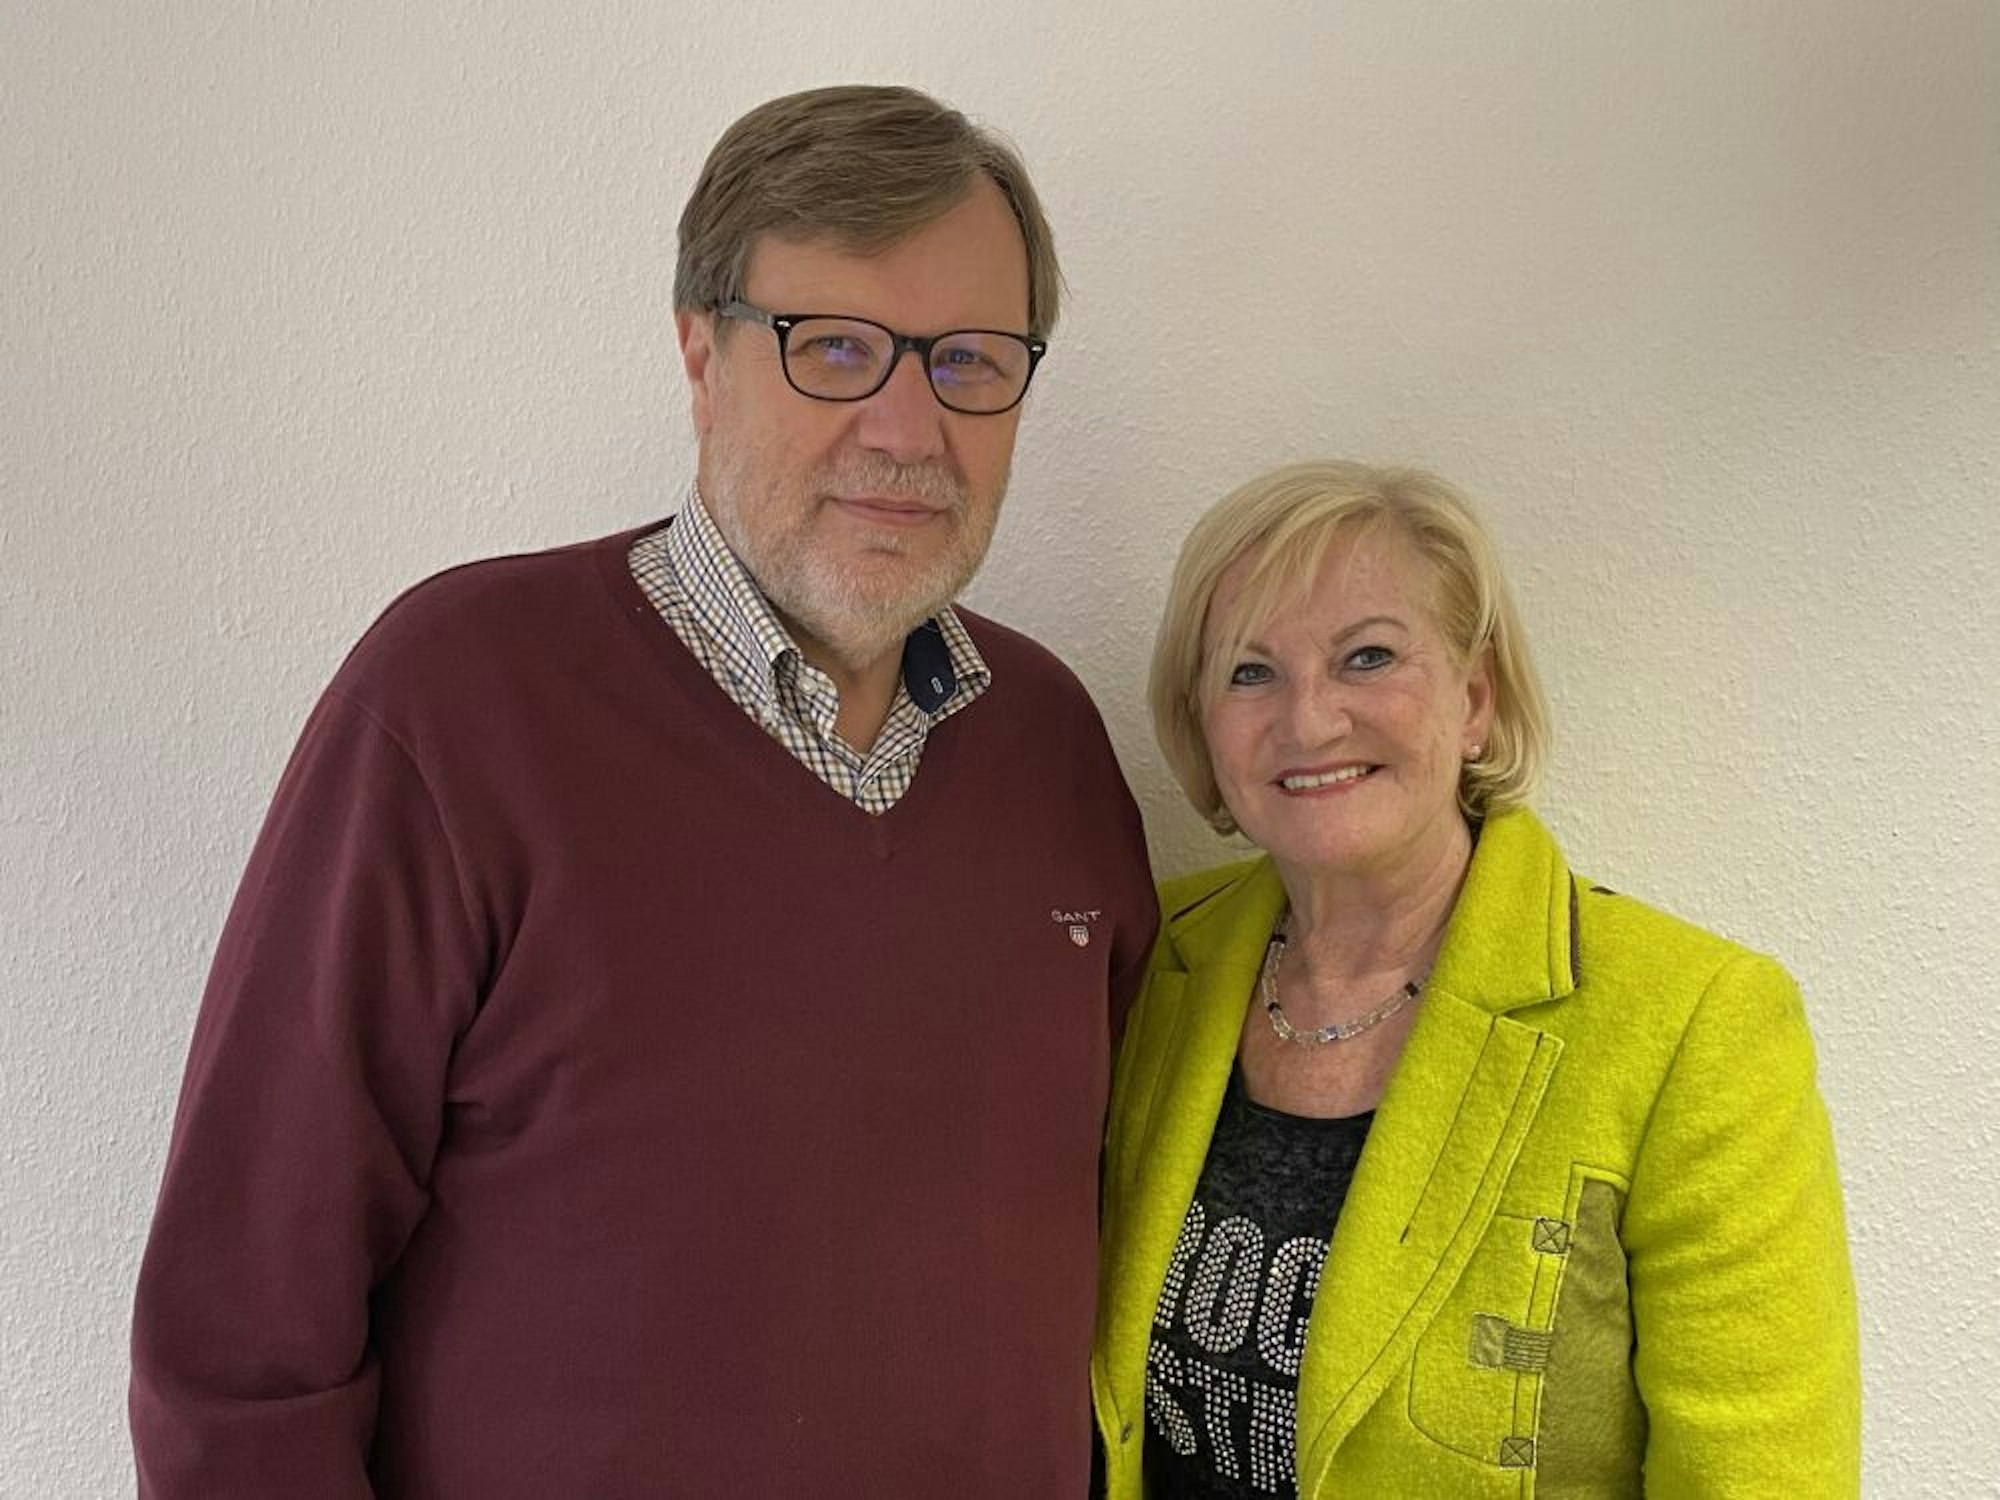 Sorgen sich: Uwe Günther, Geschäftsführer der Kreishandwerkerschaft Rureifel, und Friseur-Innungsobermeisterin Bernadette Hein.